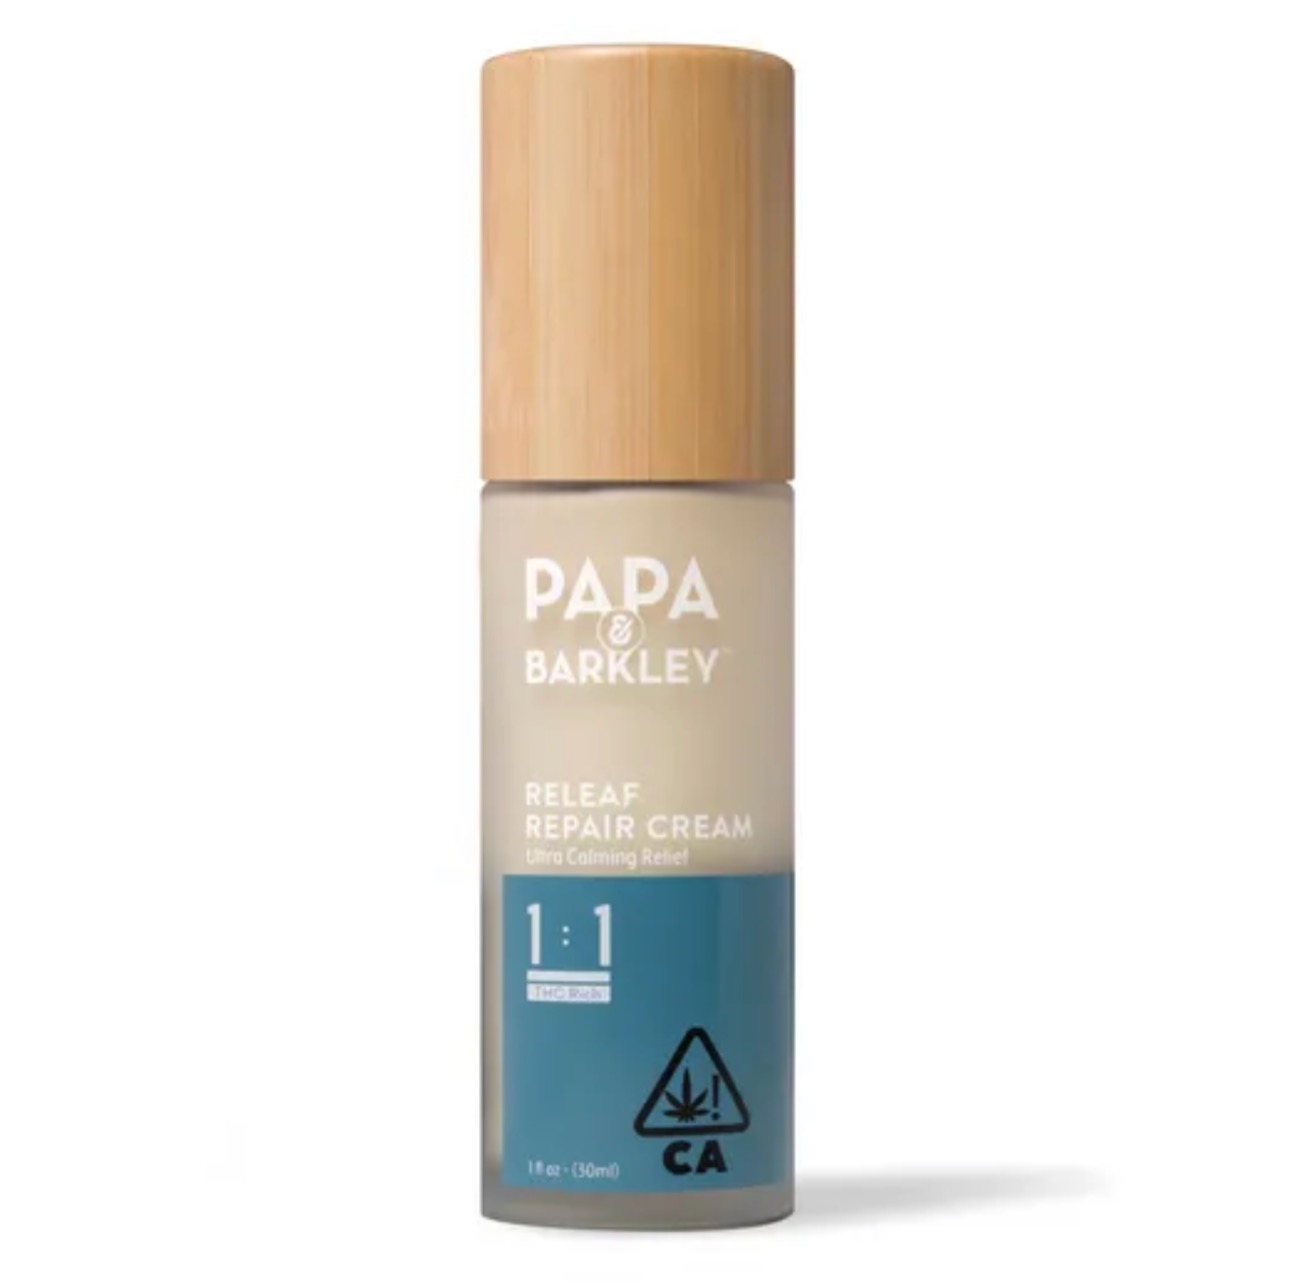 Papa & Barkley 1:1 Releaf Repair Cream